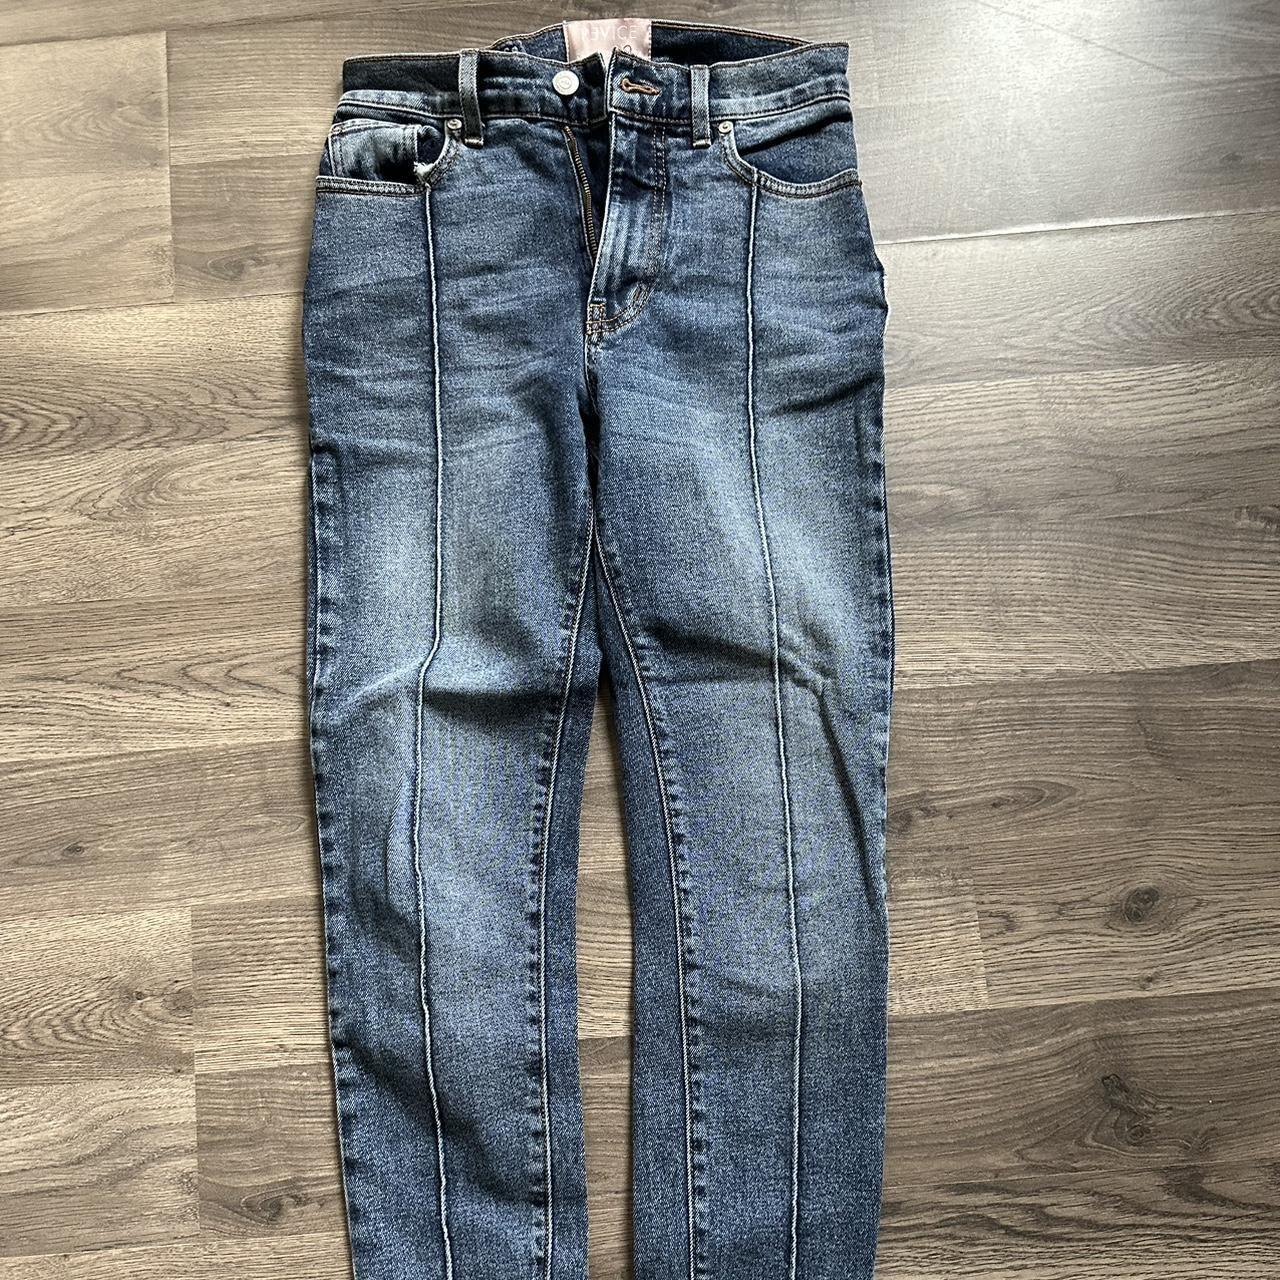 Revive denim star booty skinny jeans. #revicedenim... - Depop